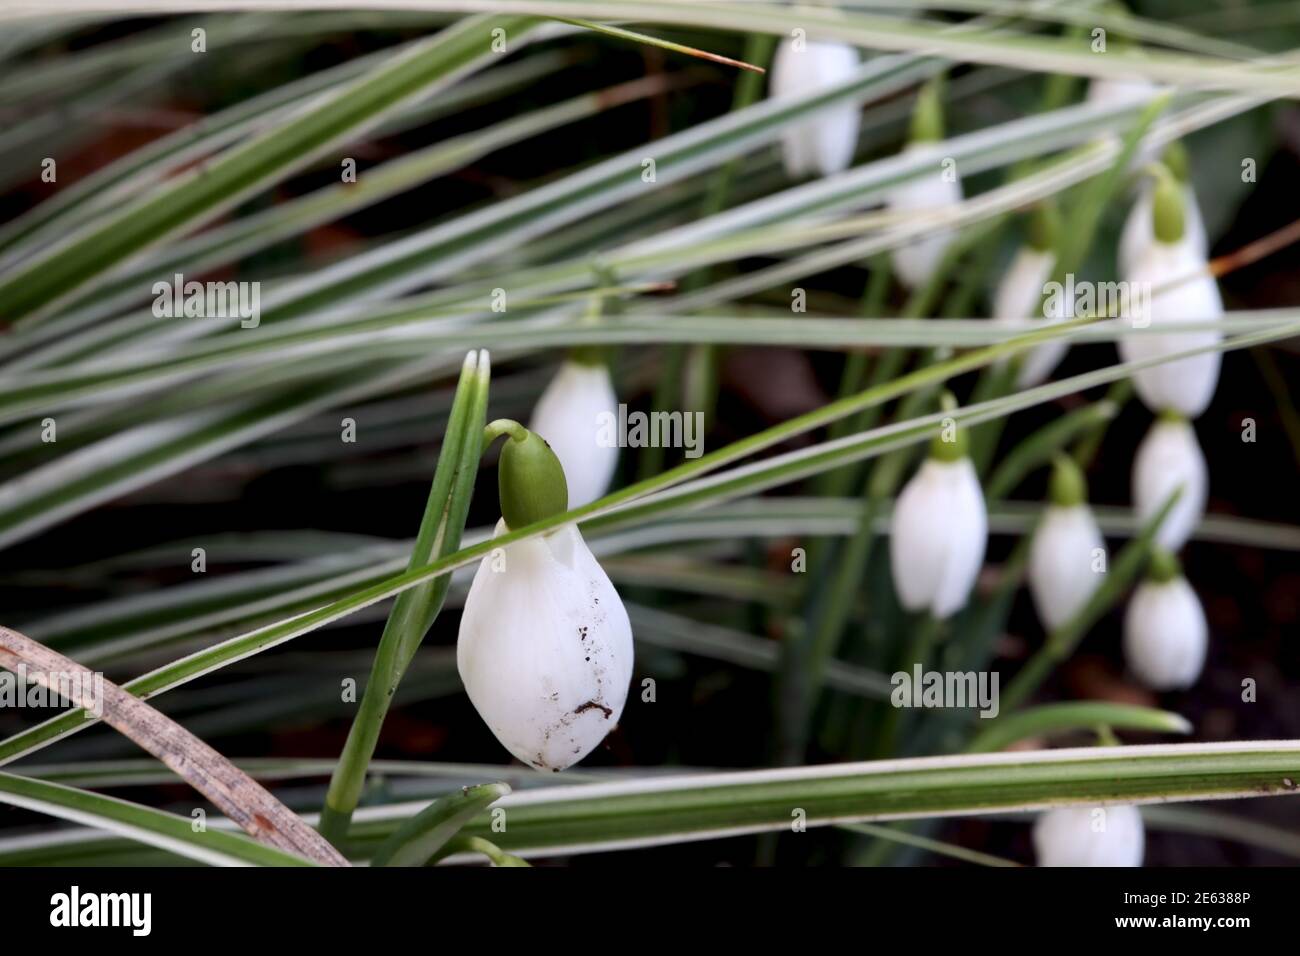 Galanthus nivalis Snowdrops – groupe bourgeonnant de fleurs blanches en forme de cloche parmi les feuilles linéaires, janvier, Angleterre, Royaume-Uni Banque D'Images